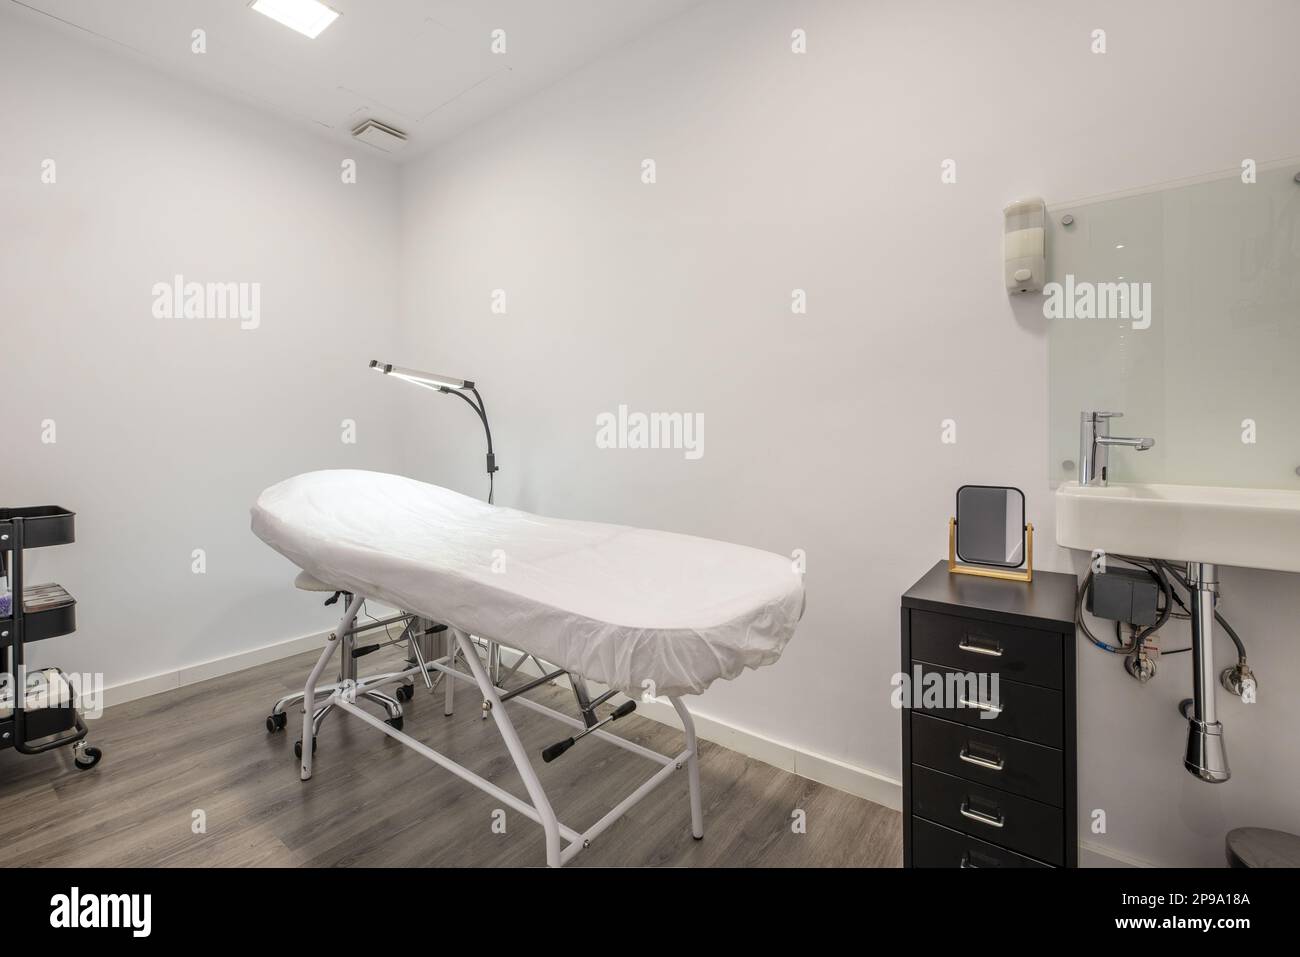 Cabine individuali nella sala massaggi con letti per l'applicazione di trattamenti con potenti lampade a doppio LED, lavelli in porcellana e cassetti in metallo Foto Stock